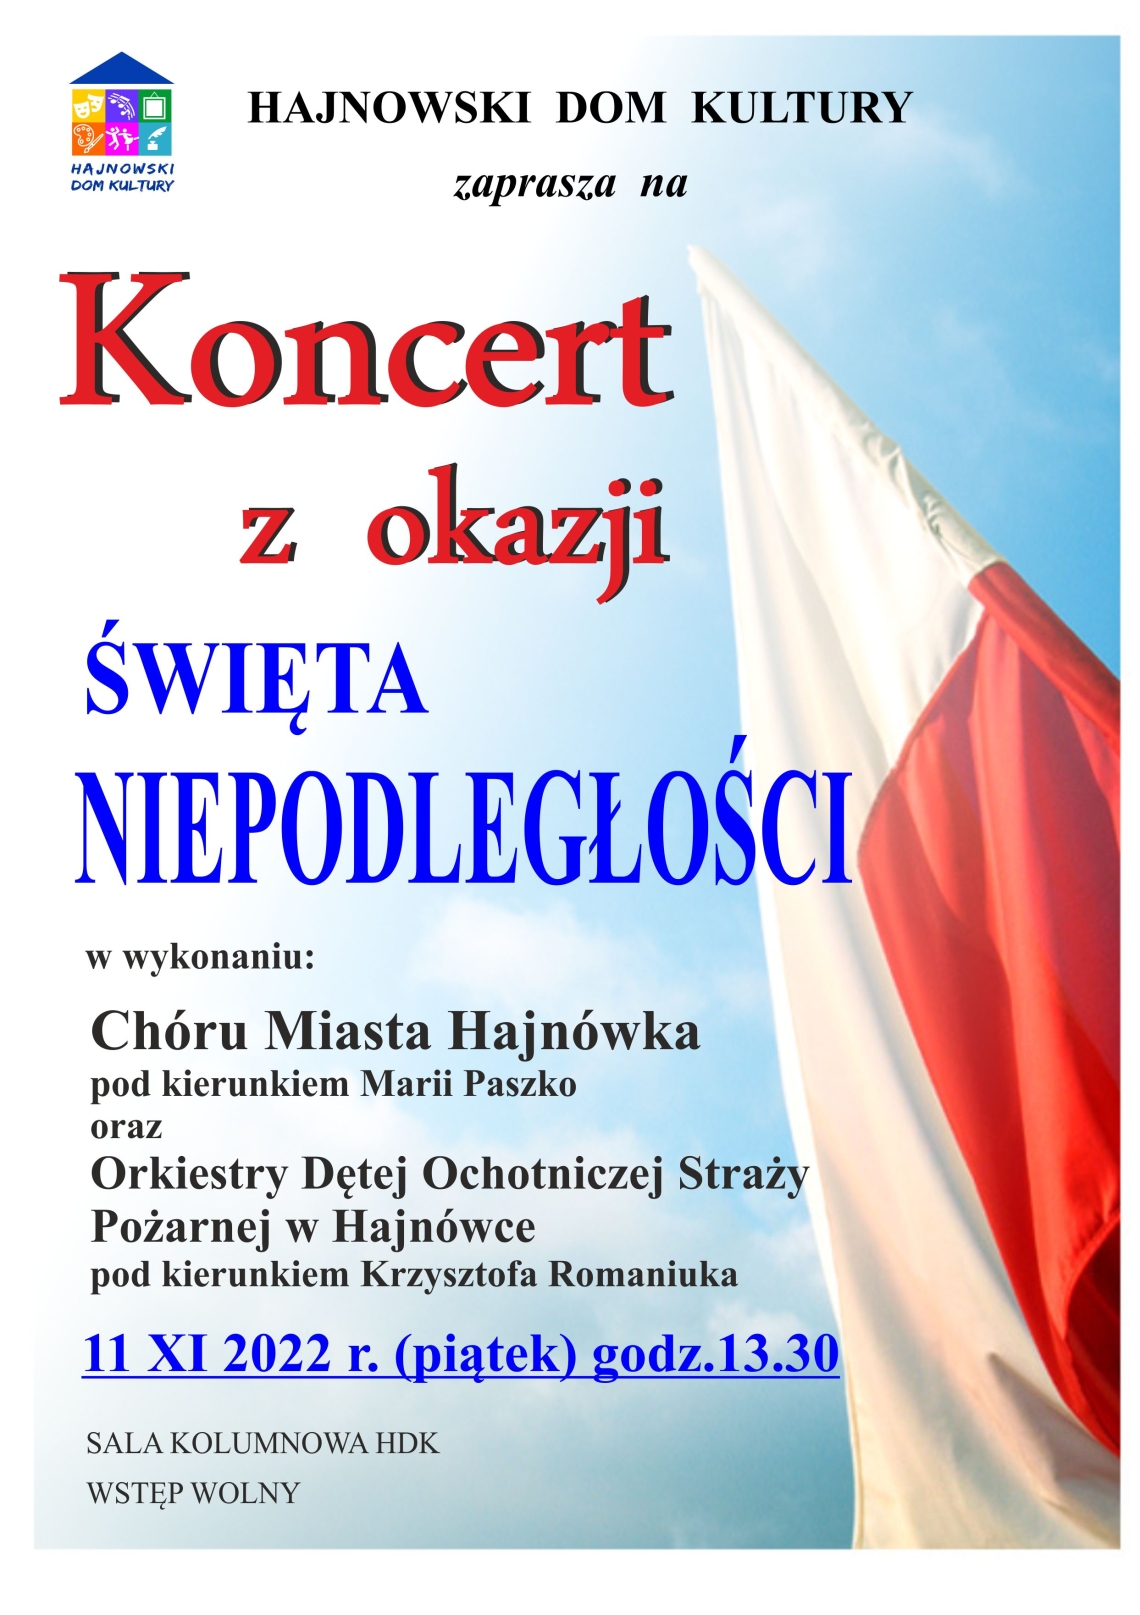 zdjęcie flagi Polski oraz inforamcje o koncercie